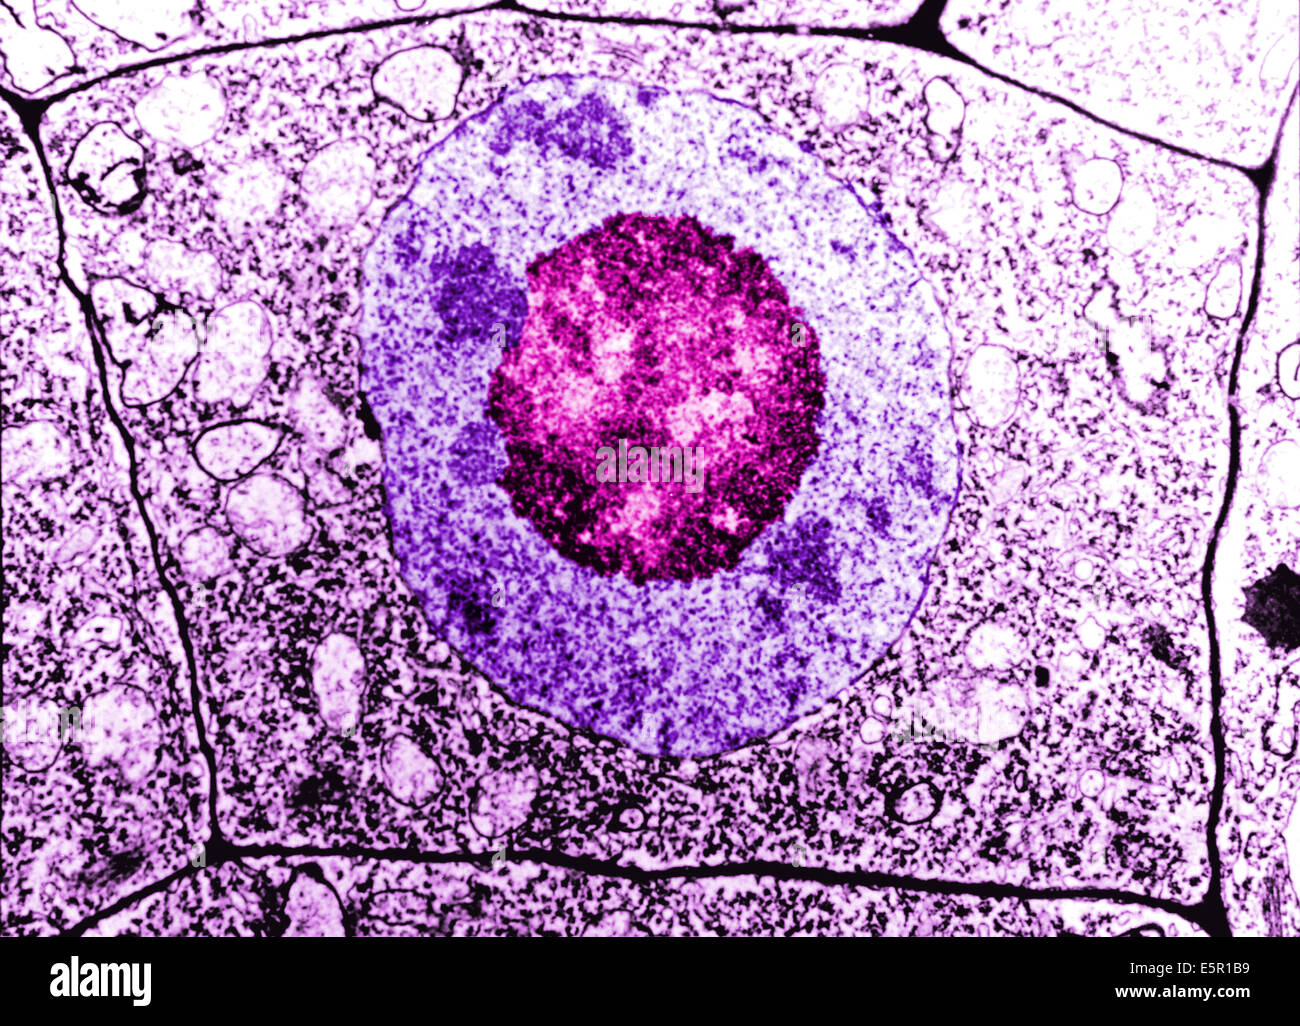 Microscopía electrónica de una célula humana normal, la membrana de la célula, el núcleo y el nuclï¿½lo son distinguibles. Foto de stock